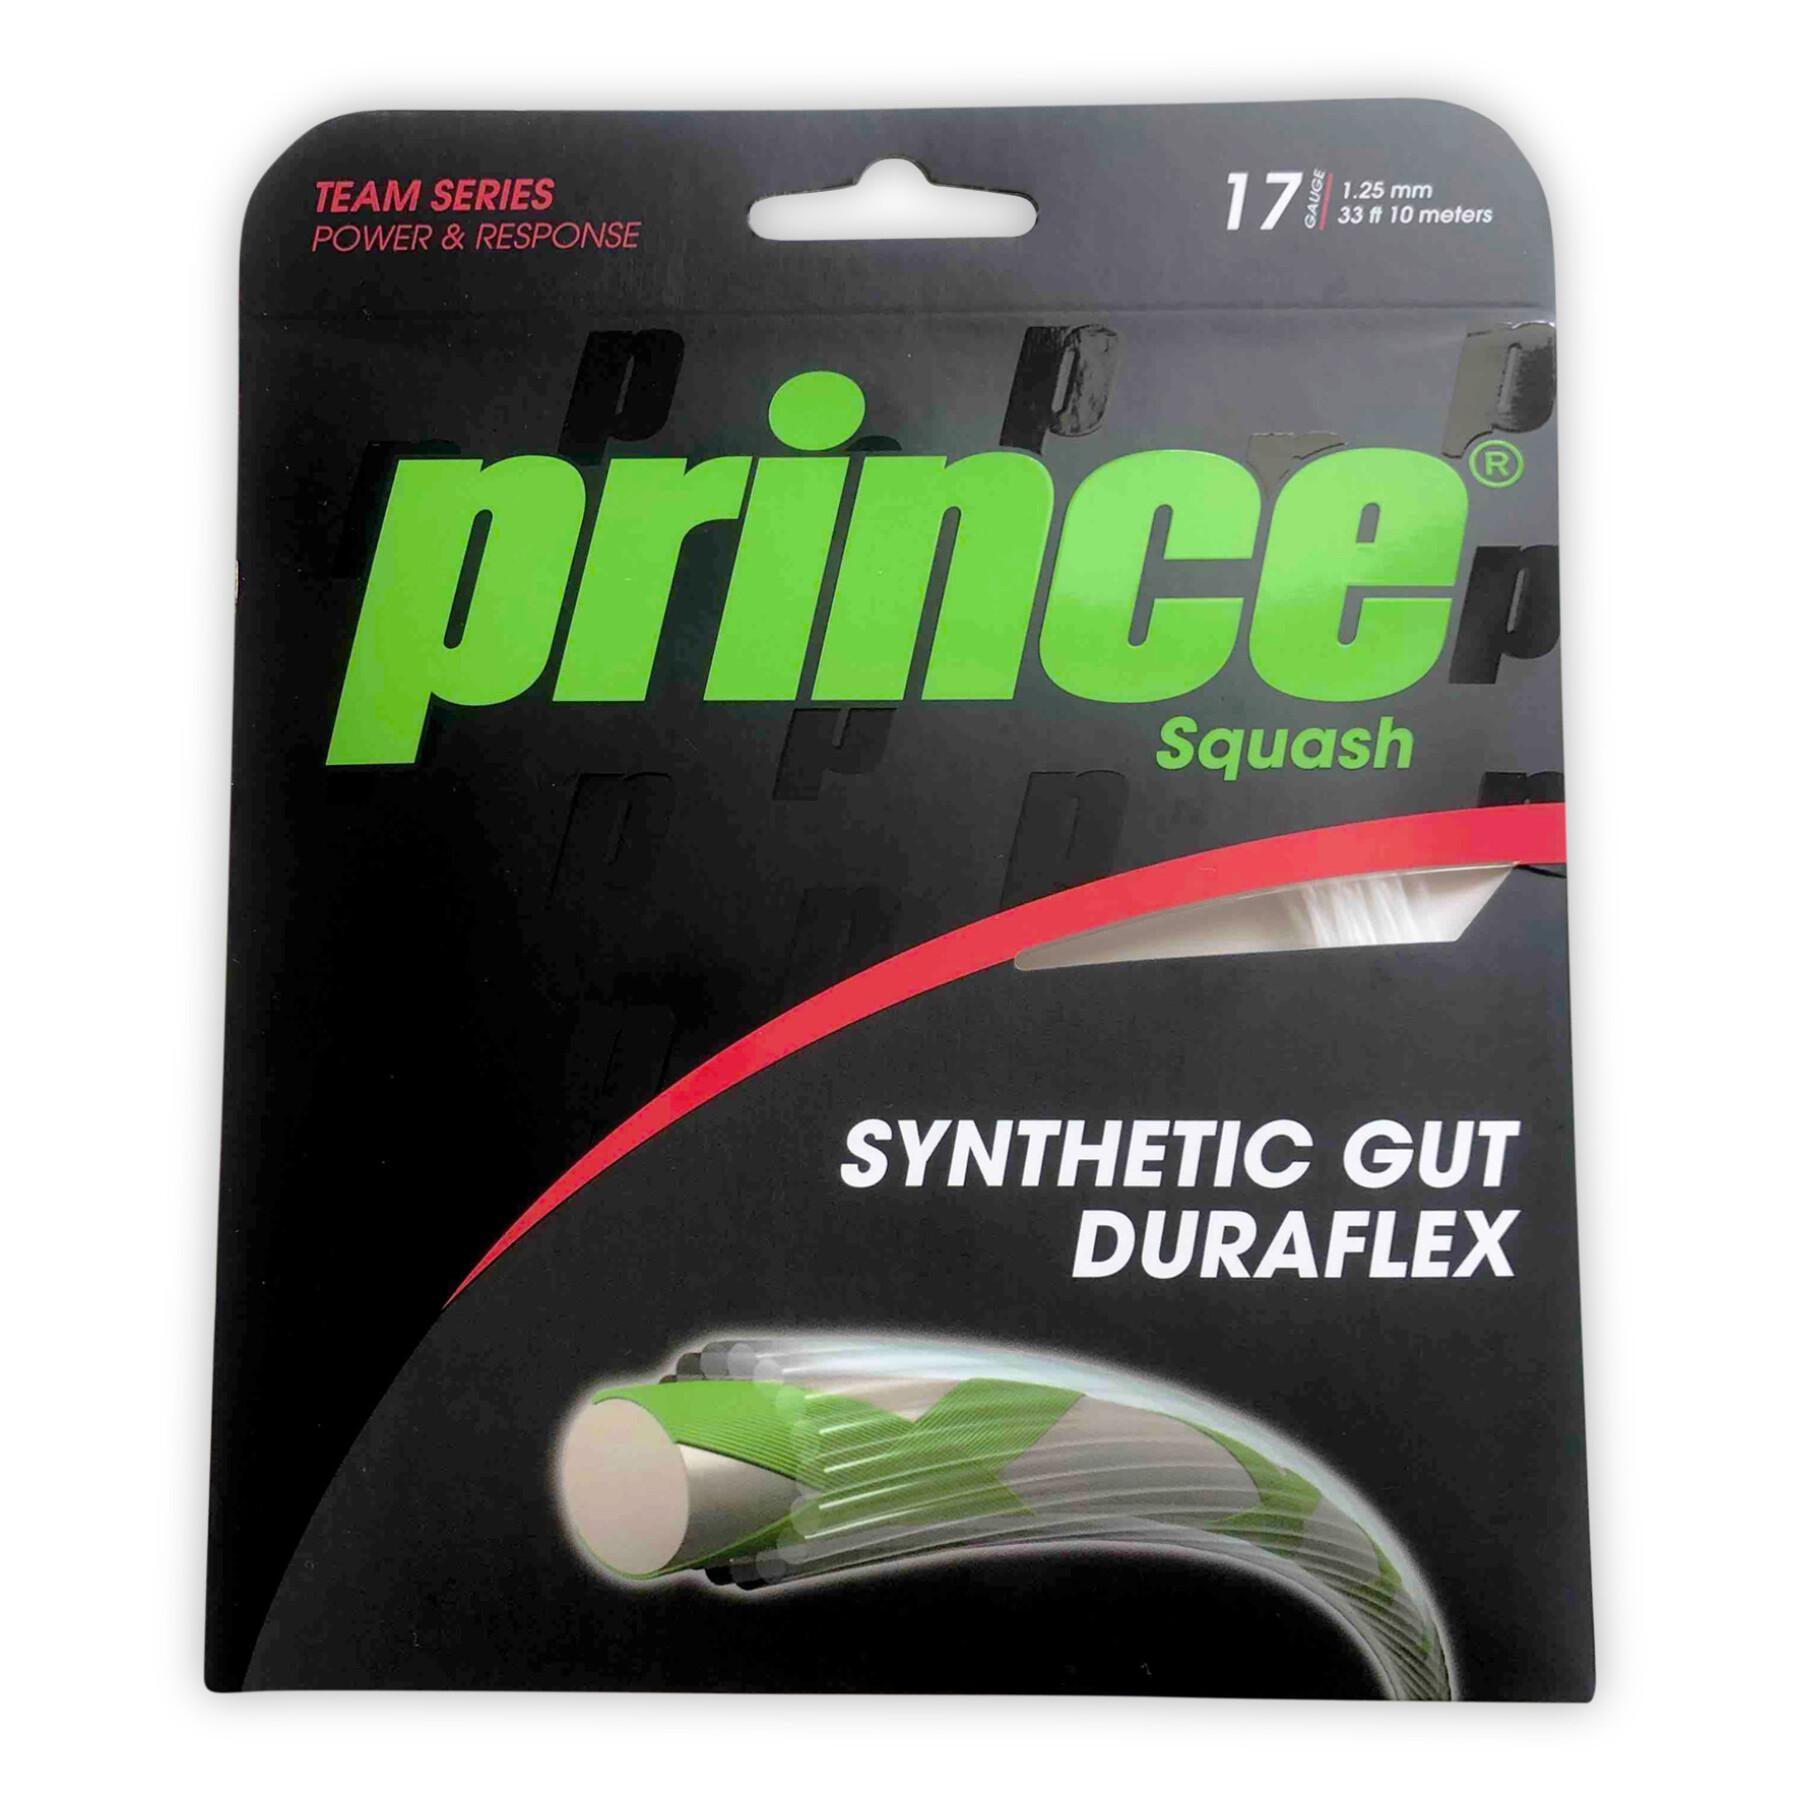 Cordas de squash Prince Synthetic Gut Duraflex